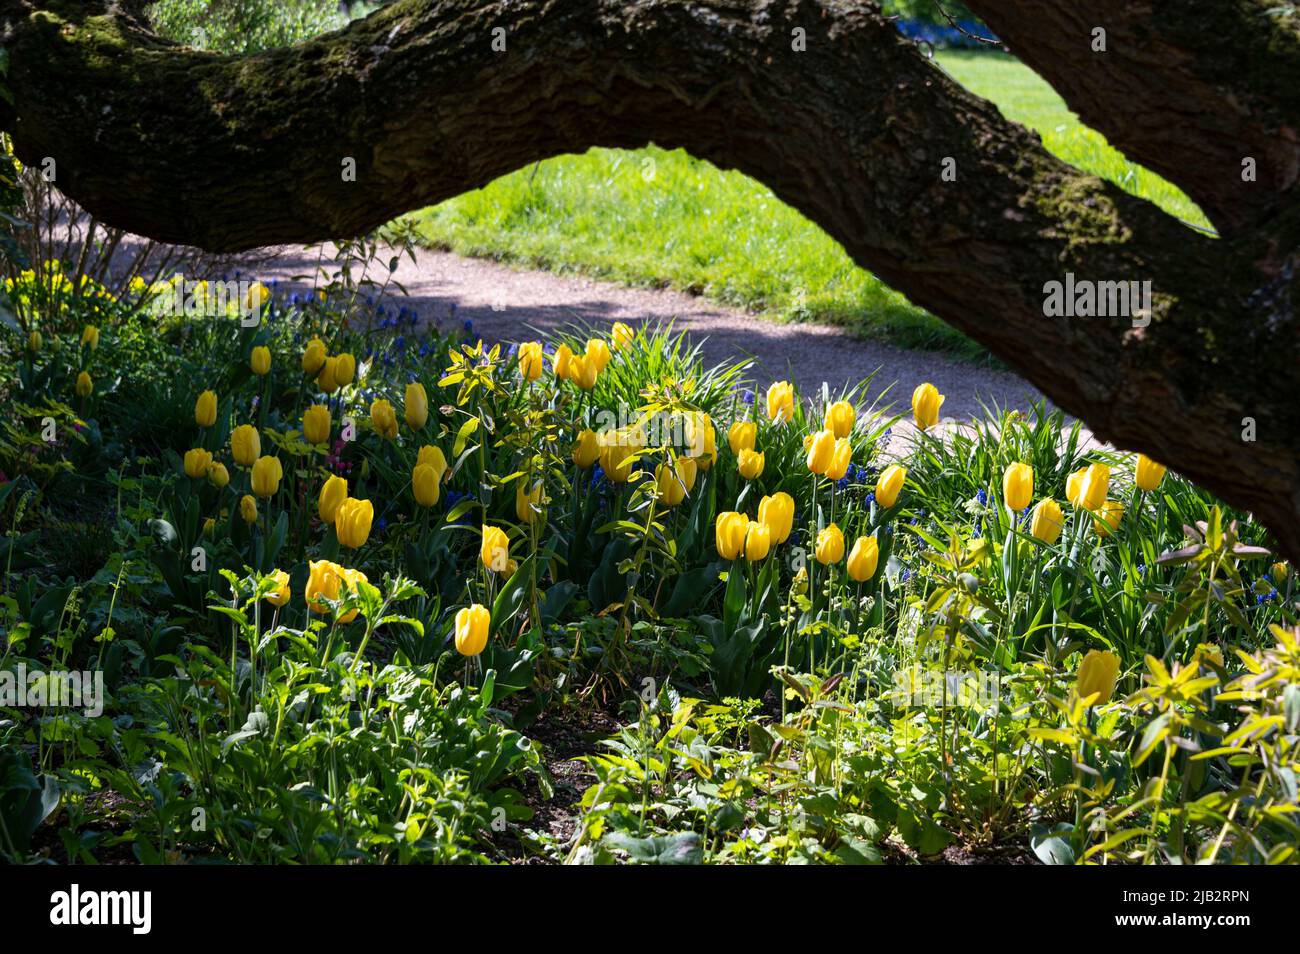 Tulipes jaunes poussant au soleil, sous une branche d'arbre surpenchée. Banque D'Images